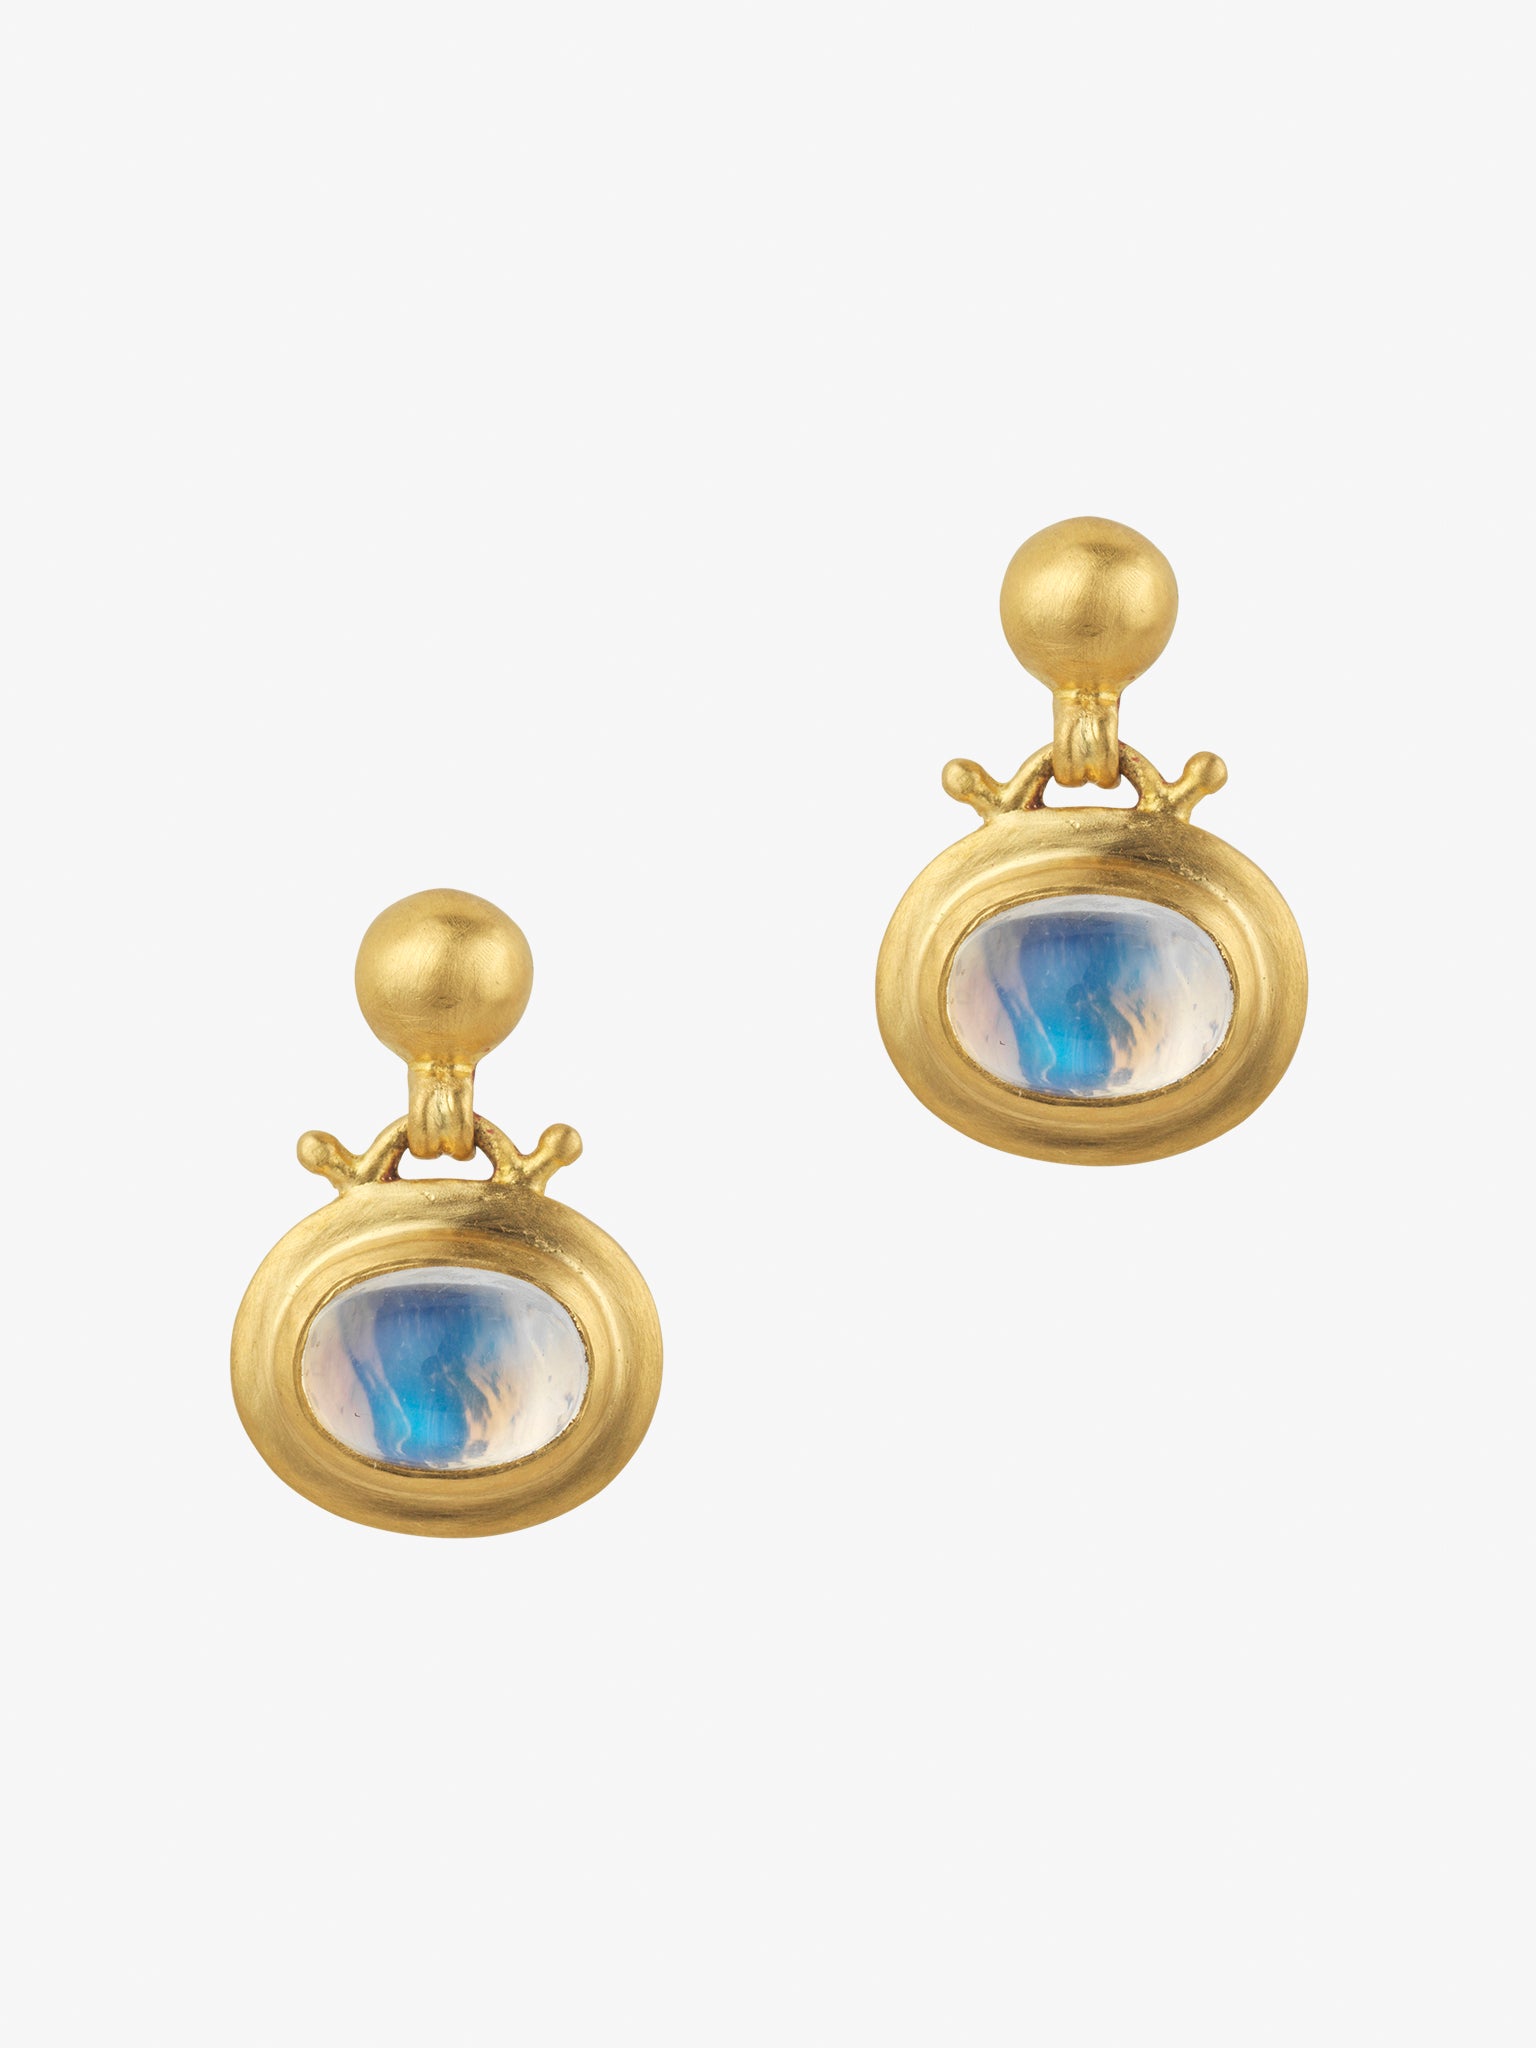 Small moonstone bell earrings